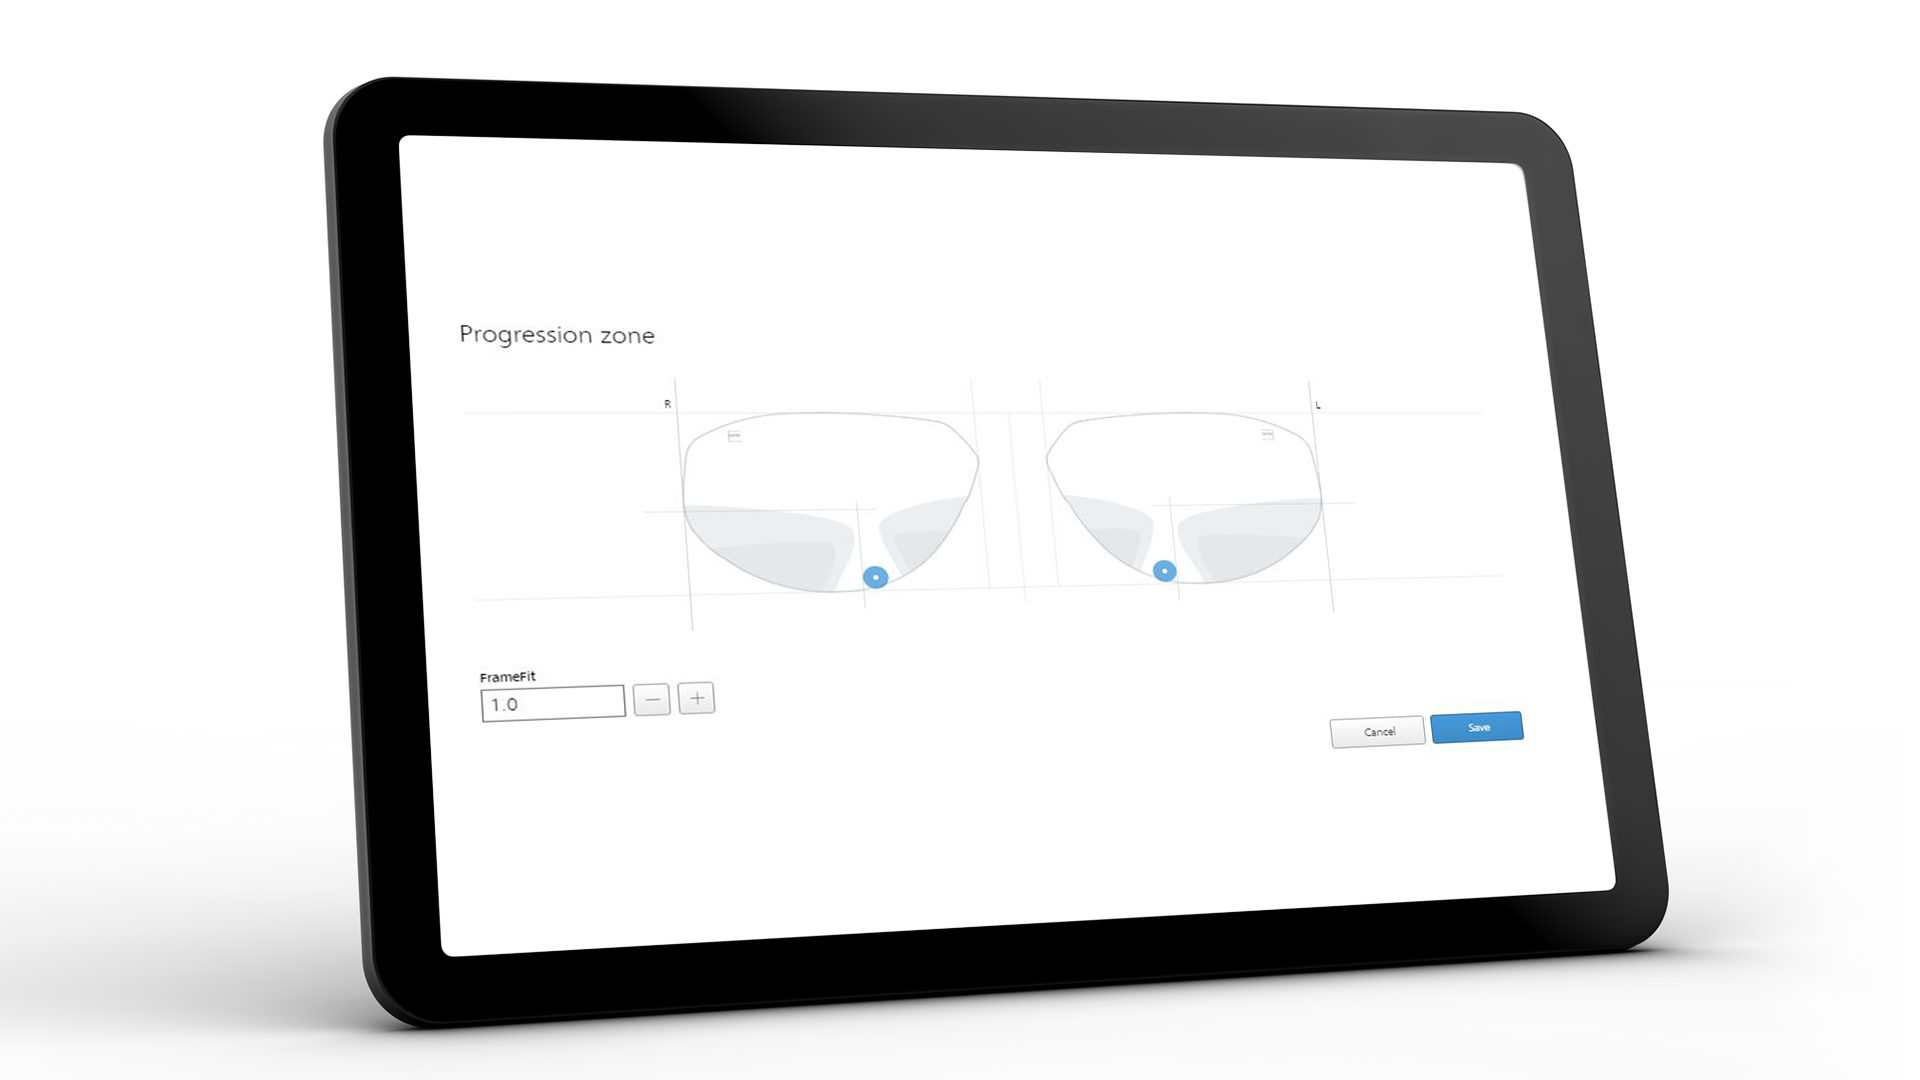 Tablet-skærmbillede, som viser ZEISS VISUSTORE-brugergrænsefladen for progressions-zonen 